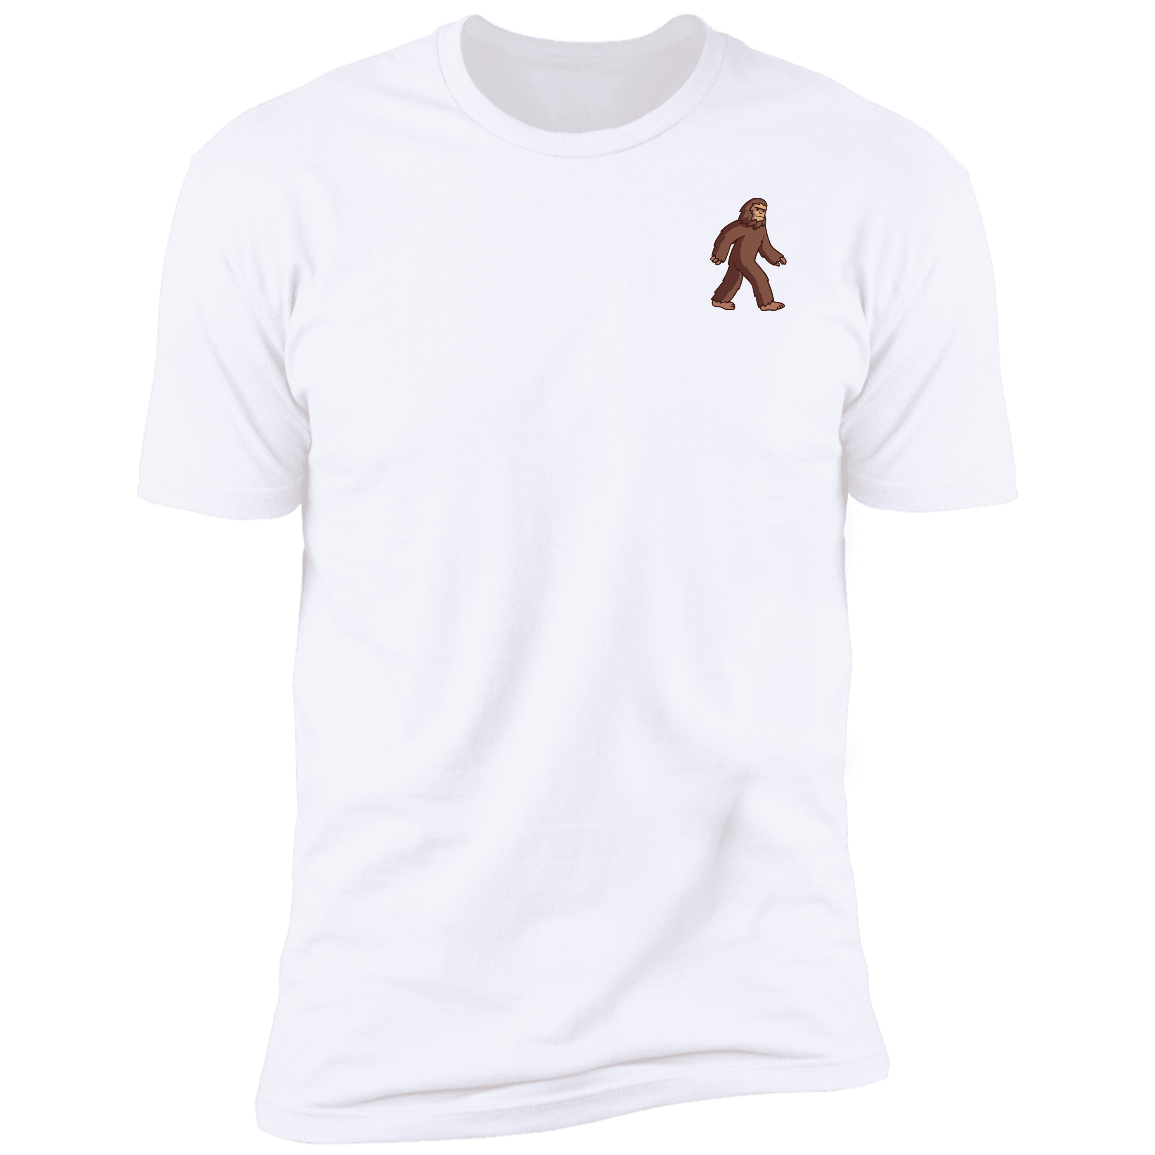 Men's Mascot Short Sleeve T-Shirt